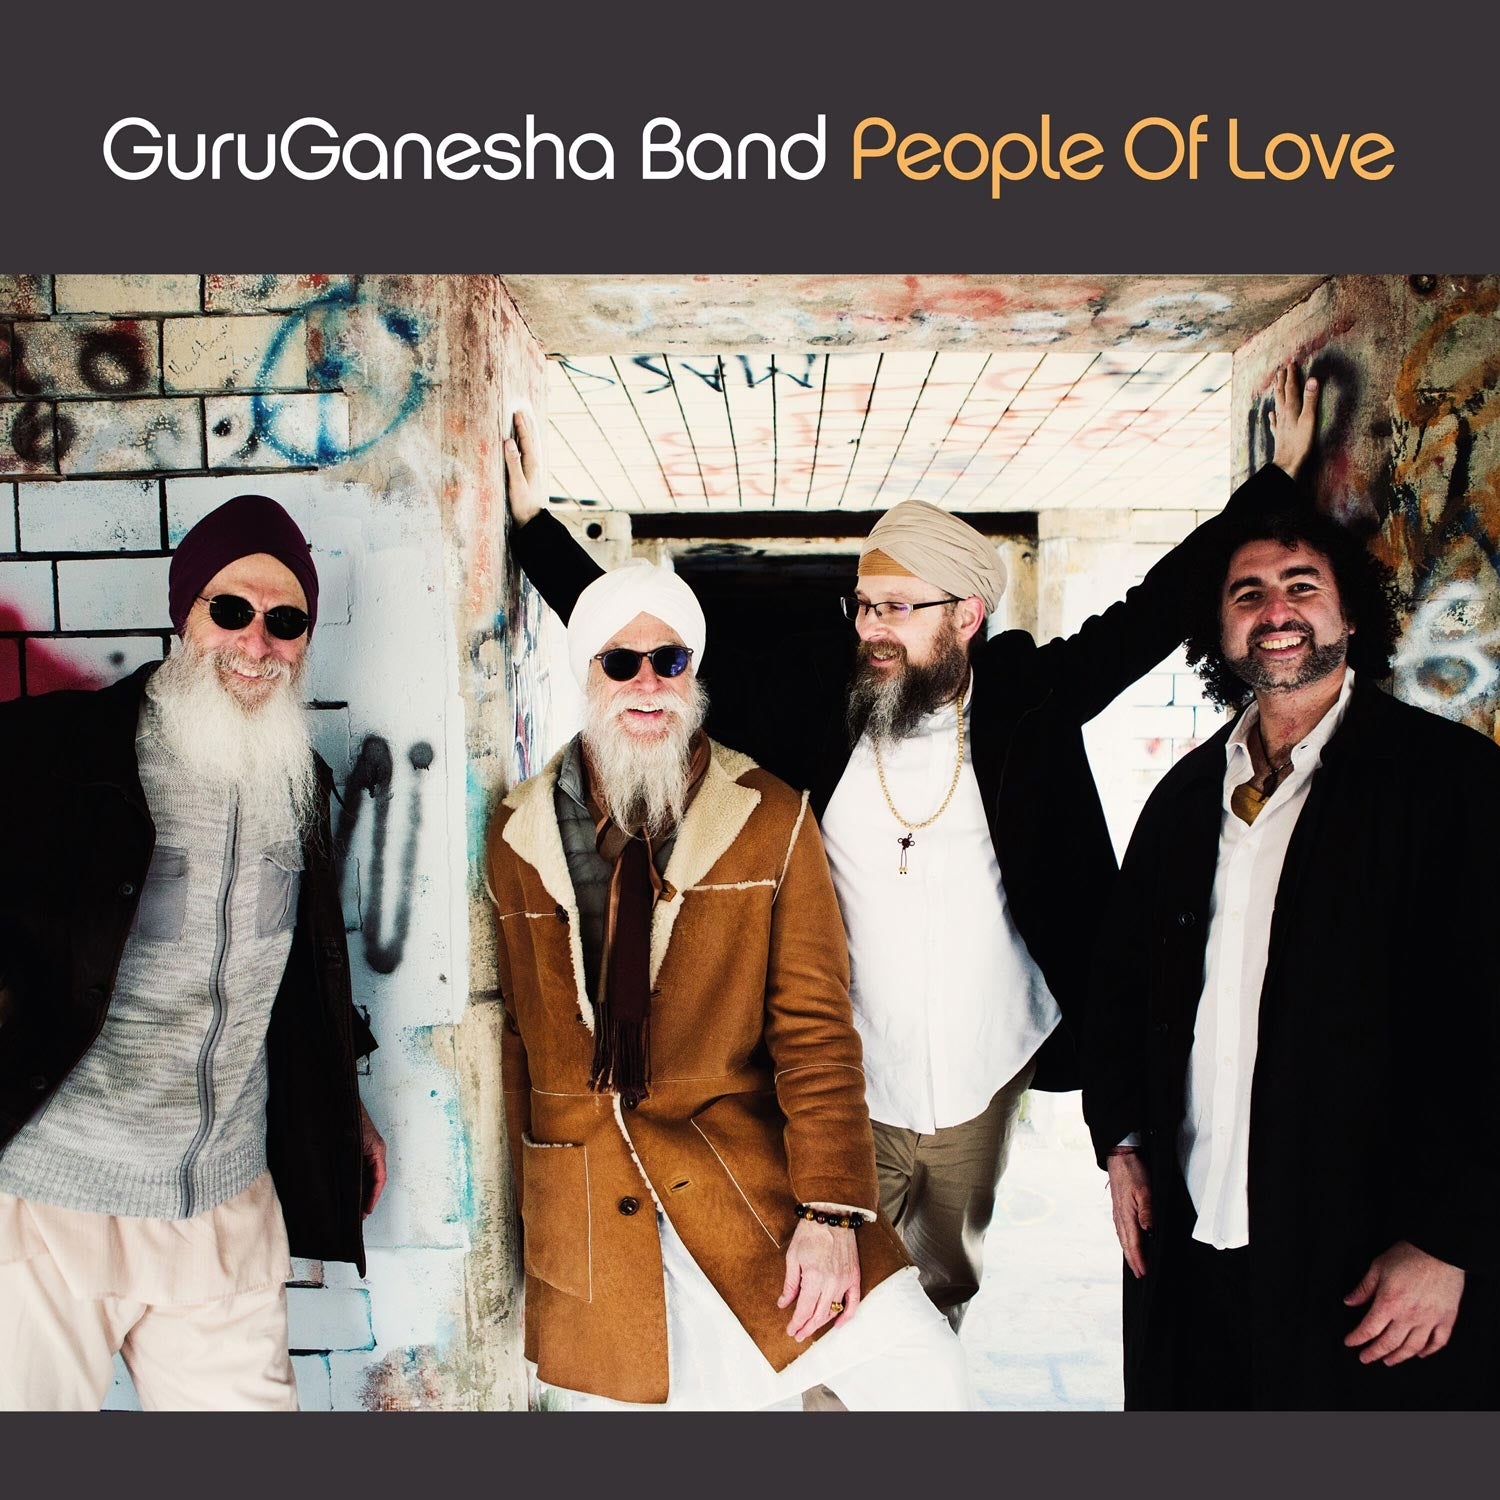 People of Love - GuruGanesha Band complete